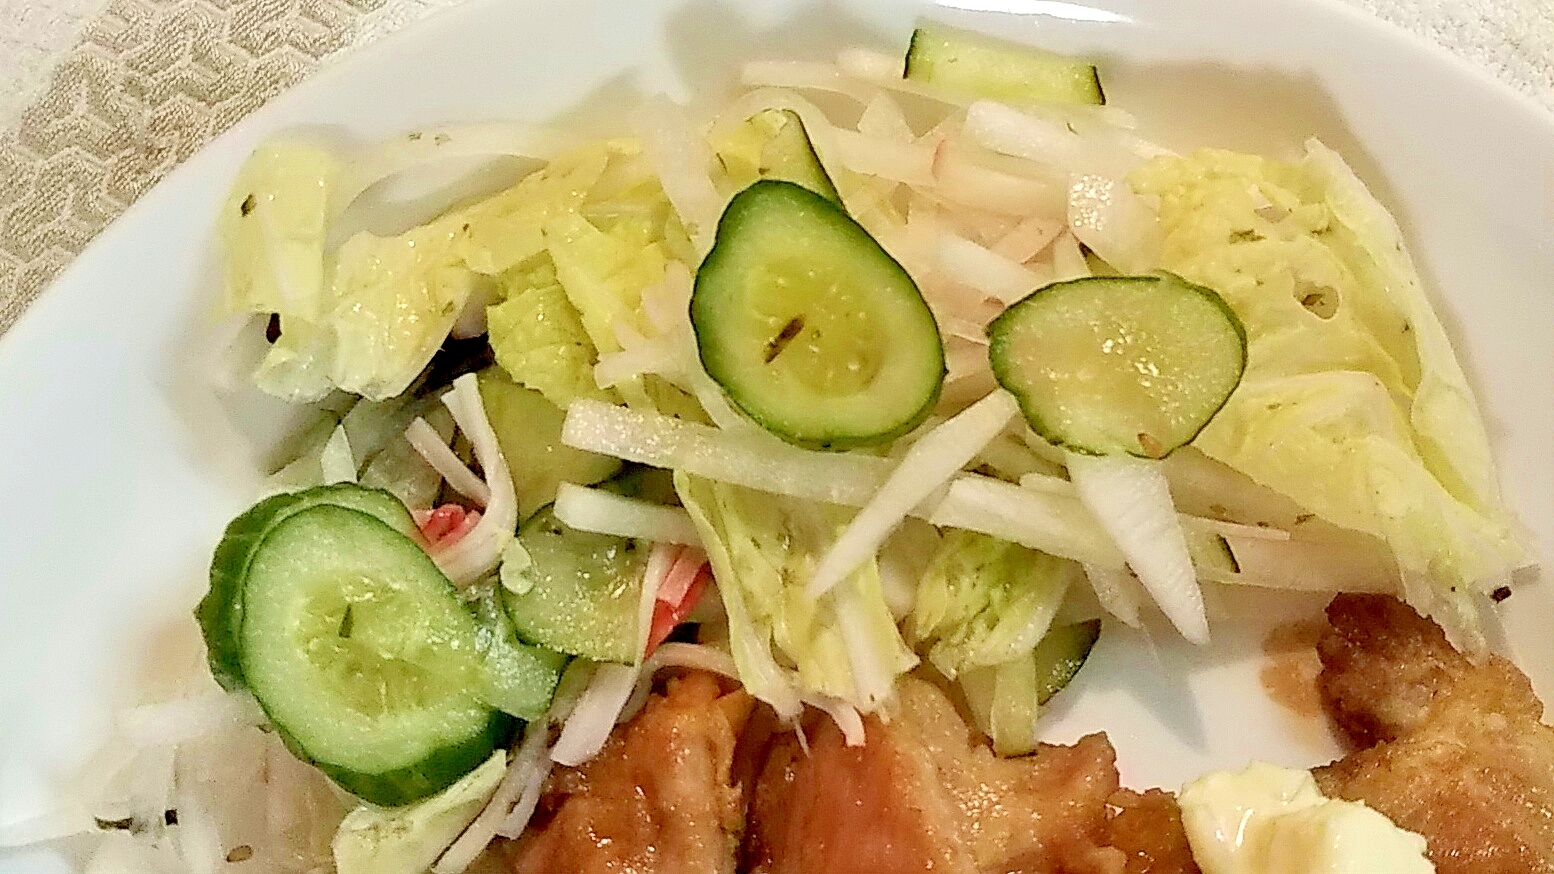 きゅうり・大根・白菜の塩揉みサラダ